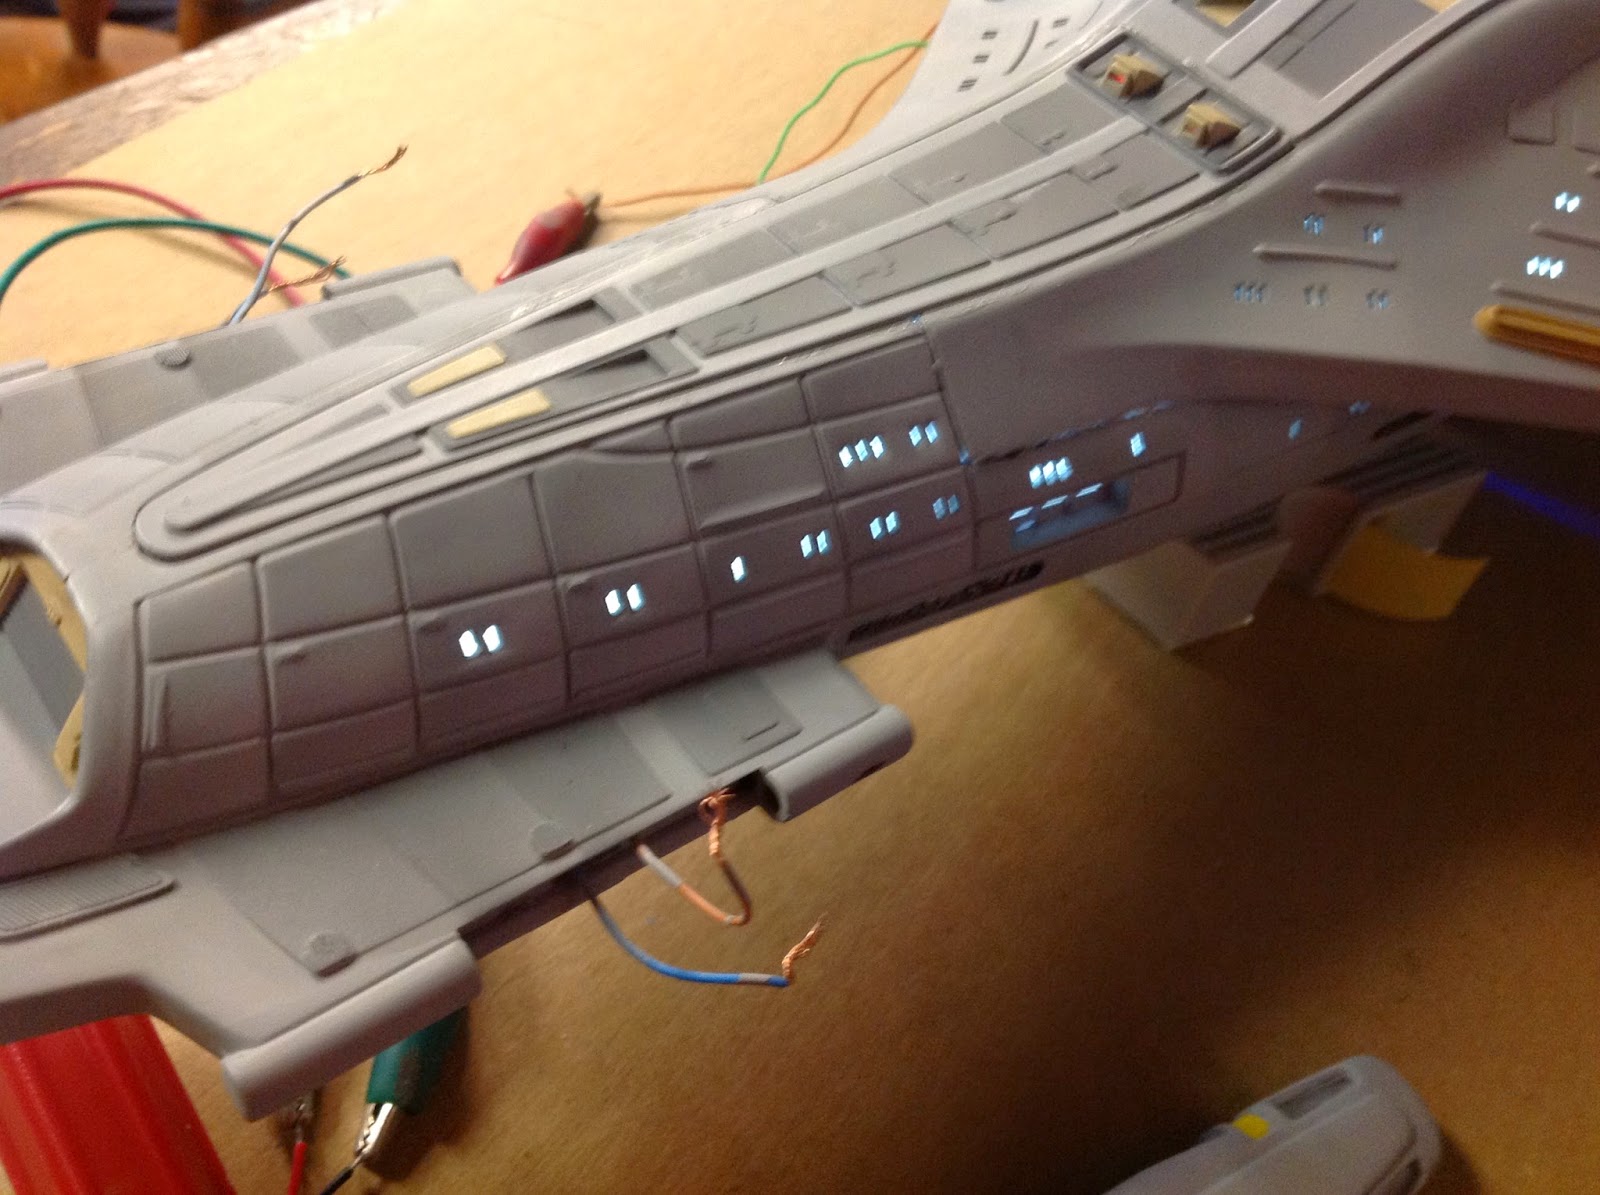 Star Trek, Voyager, Scale model, Revell, Plastic Model, 